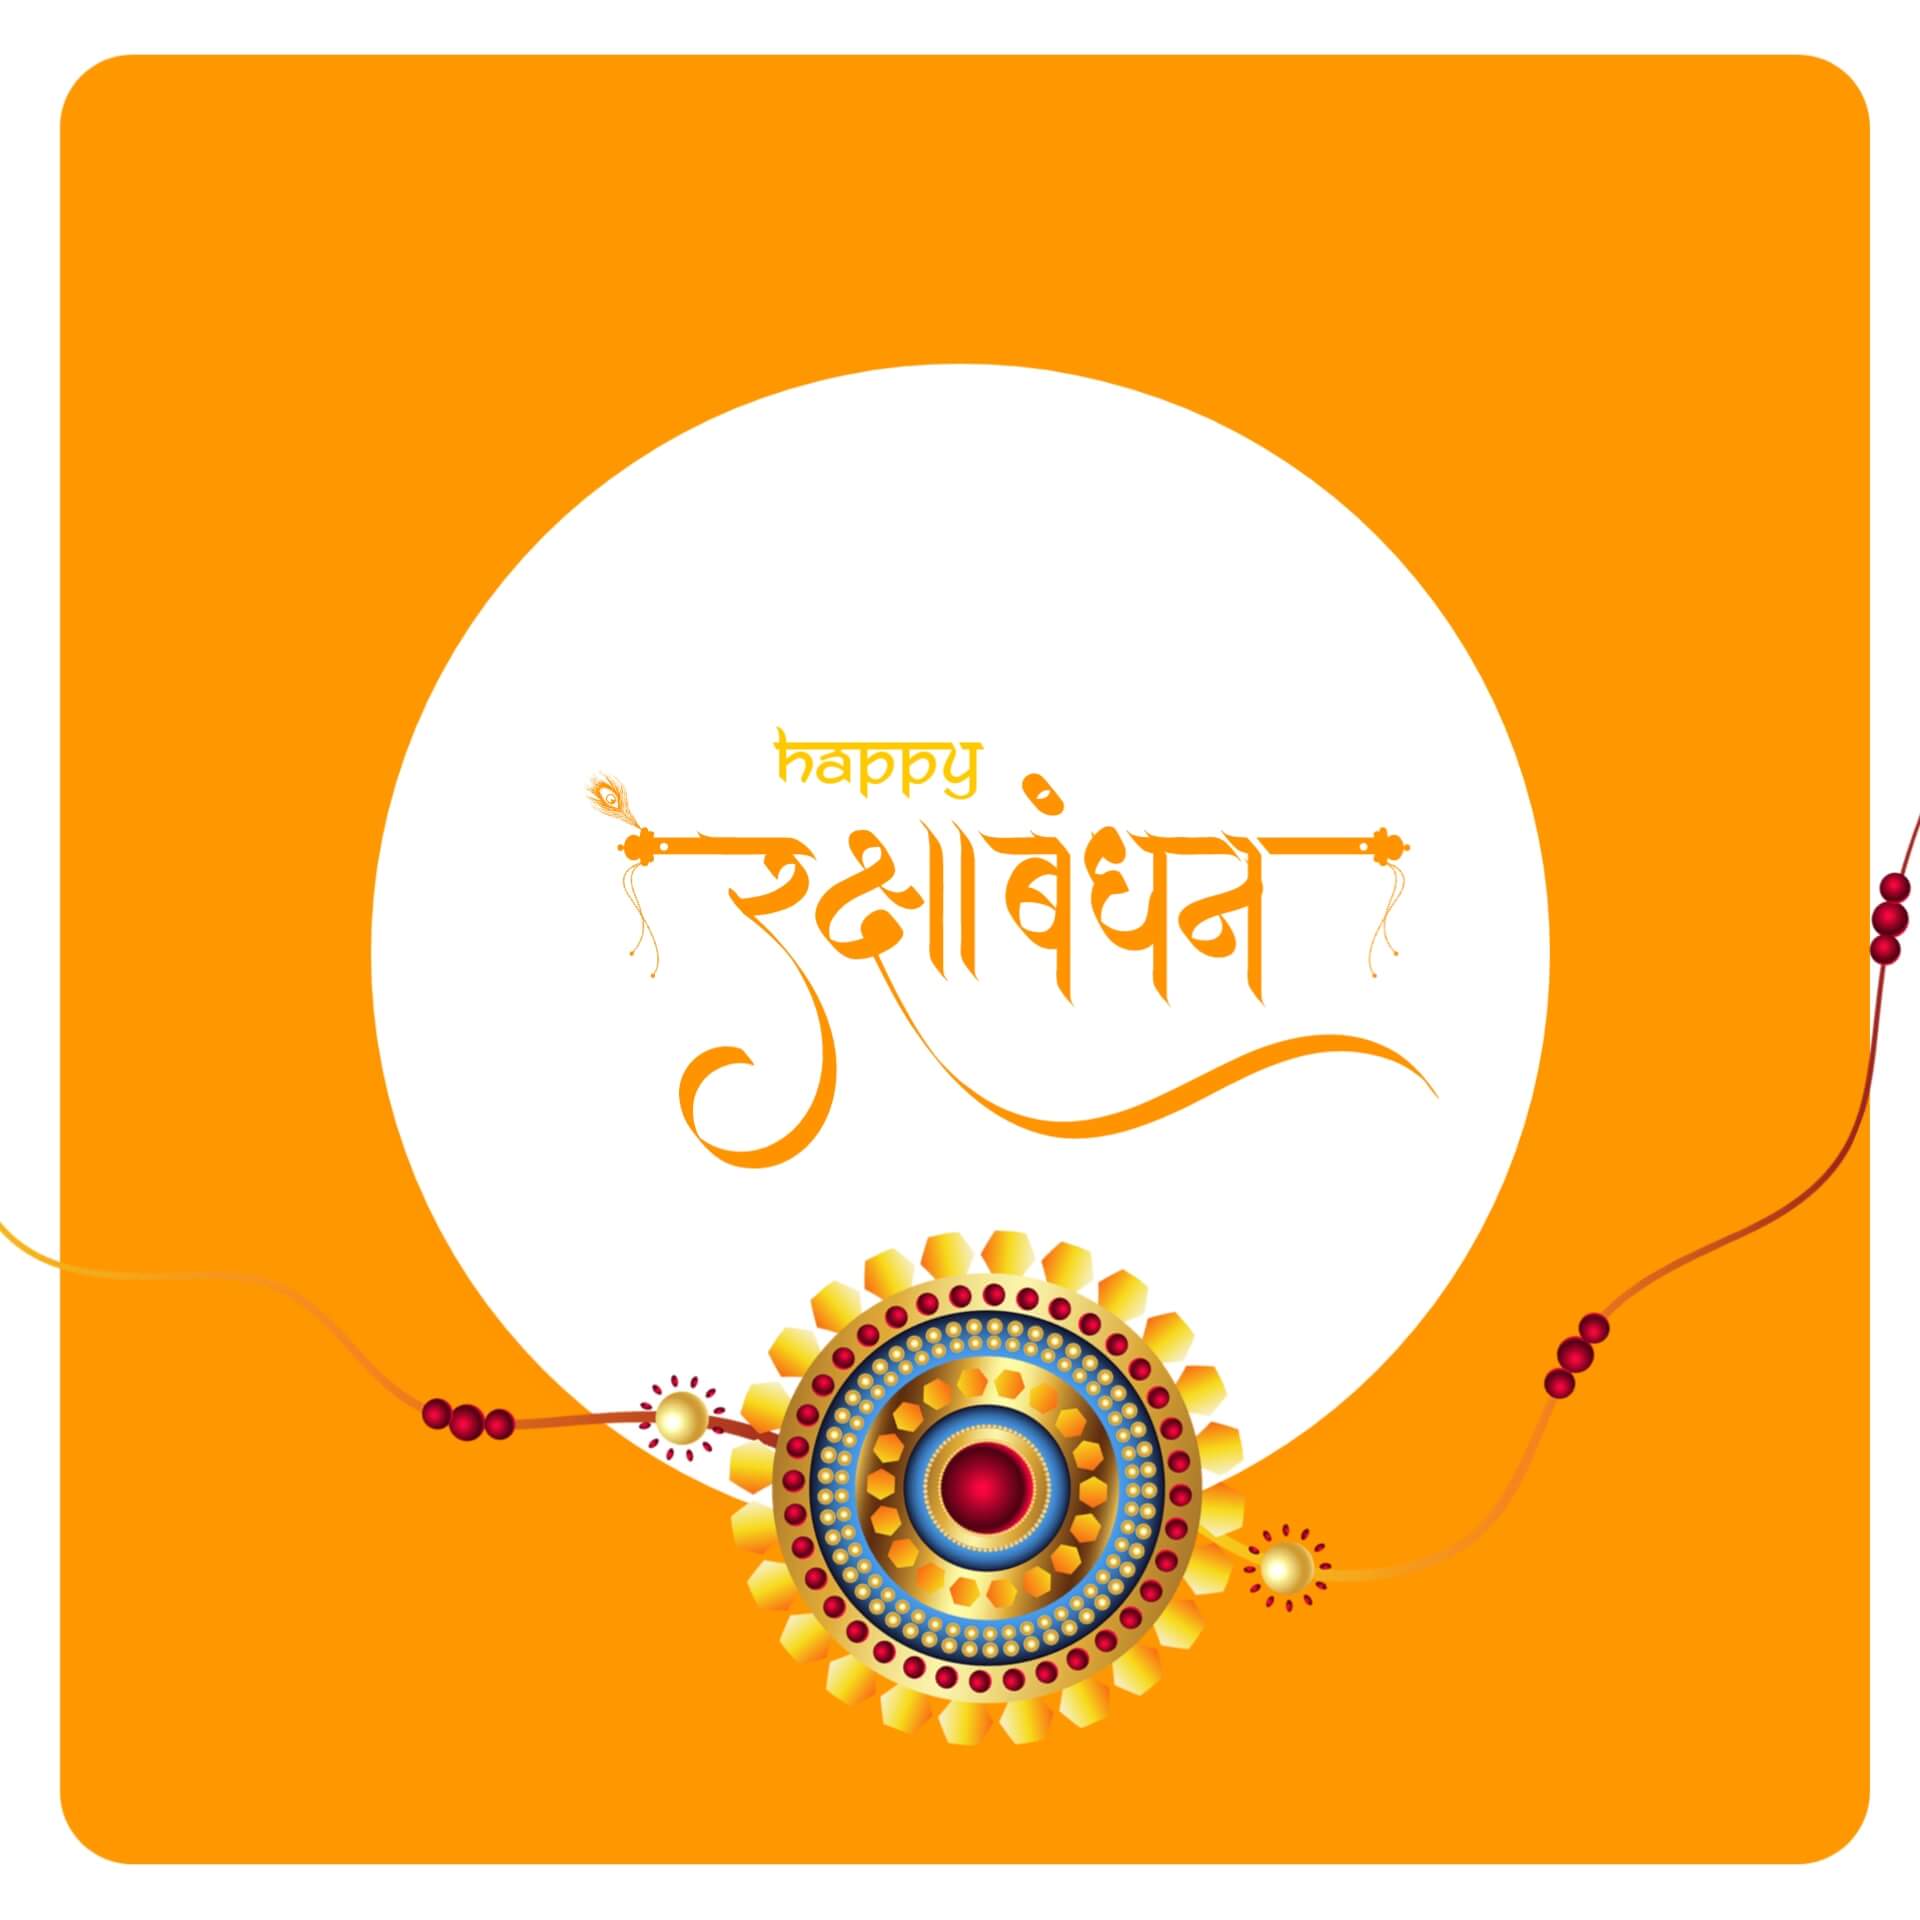 Hindi Raksha Bandhan Image with Orange Background